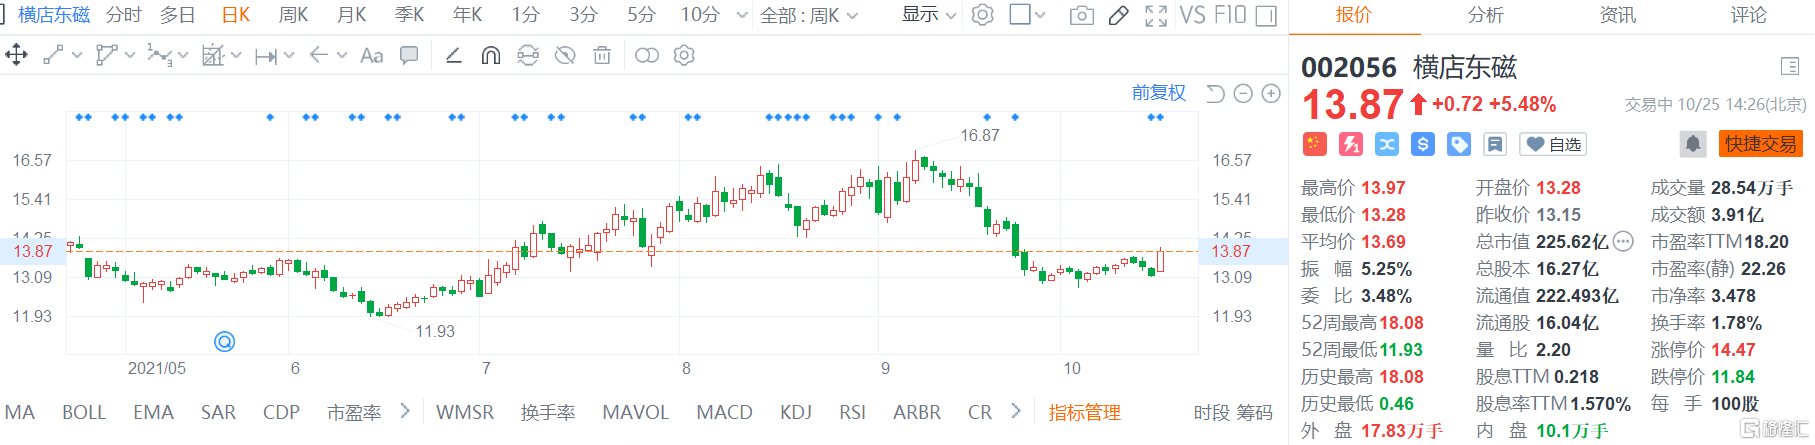 横店东磁(002056.SZ)股价现报13.87元涨幅5.48%，总市值225.62亿